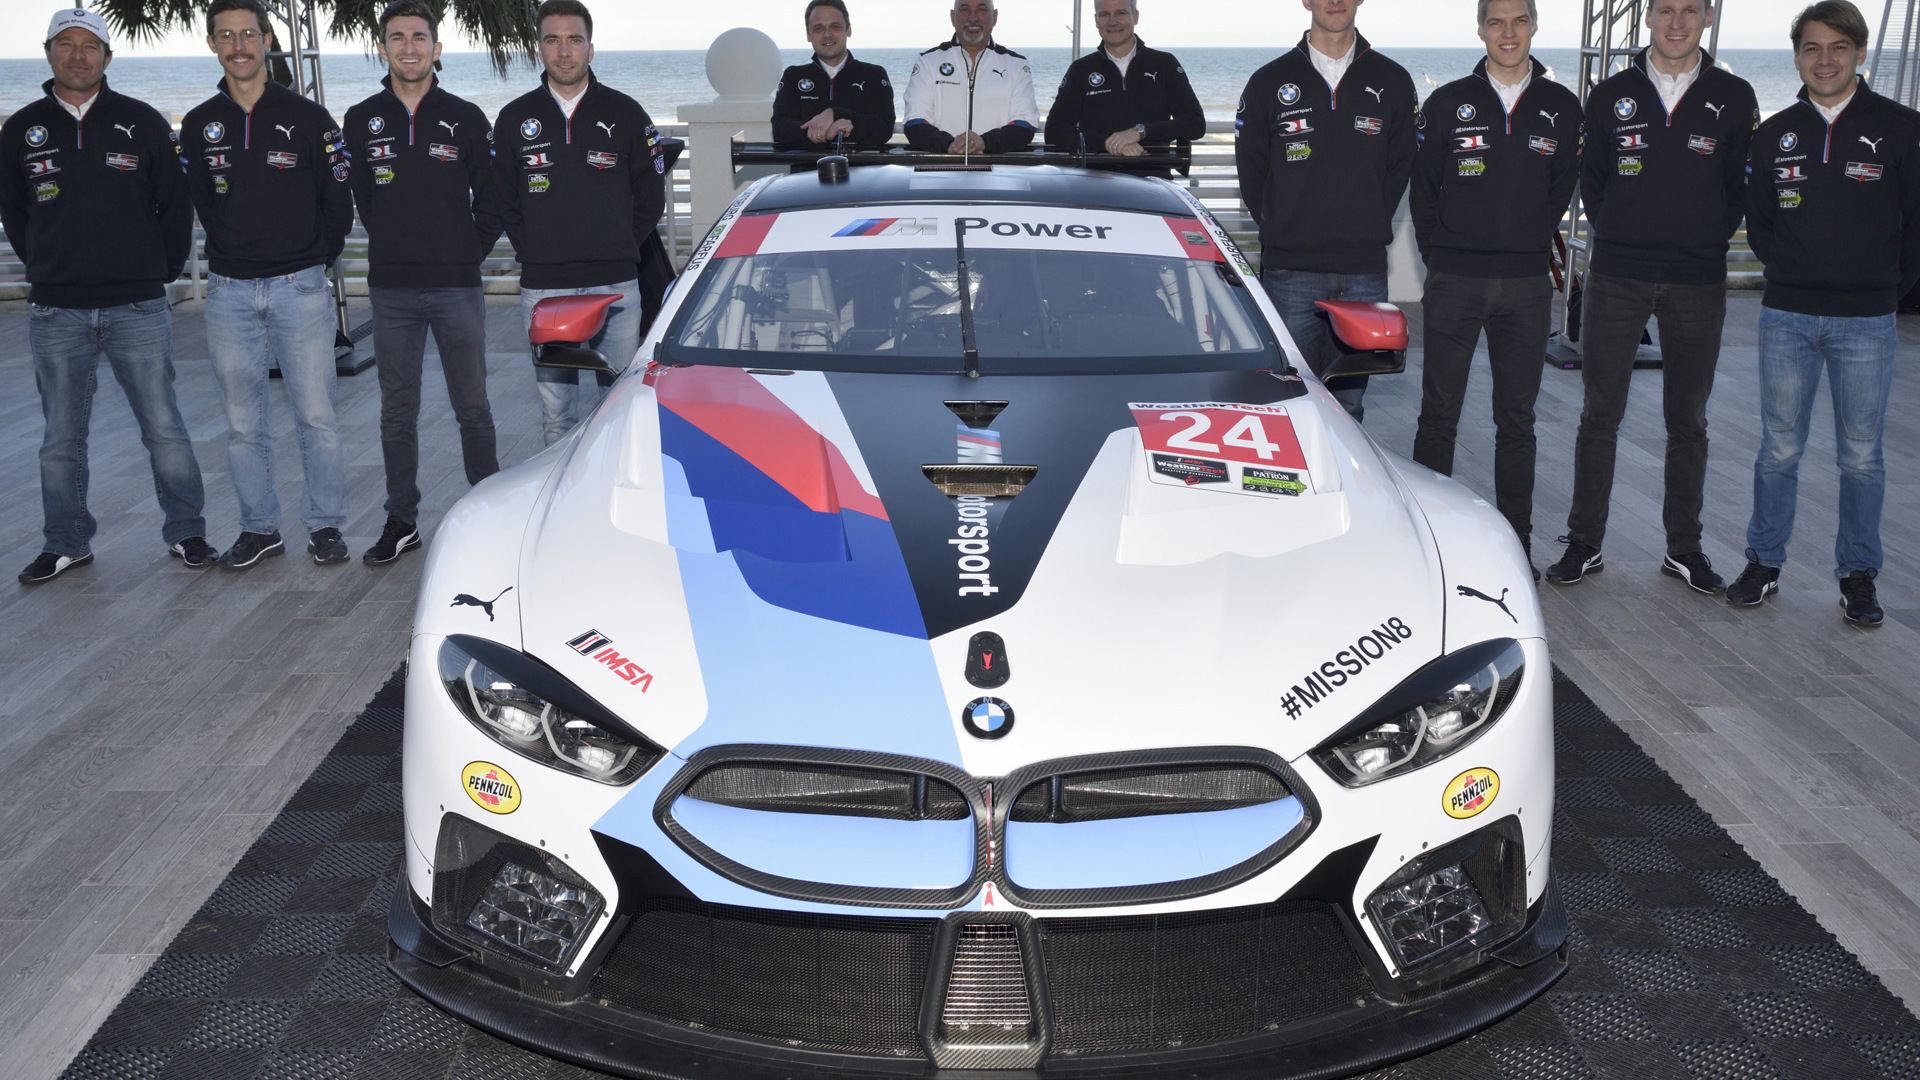 2018 BMW M8 GTE race car